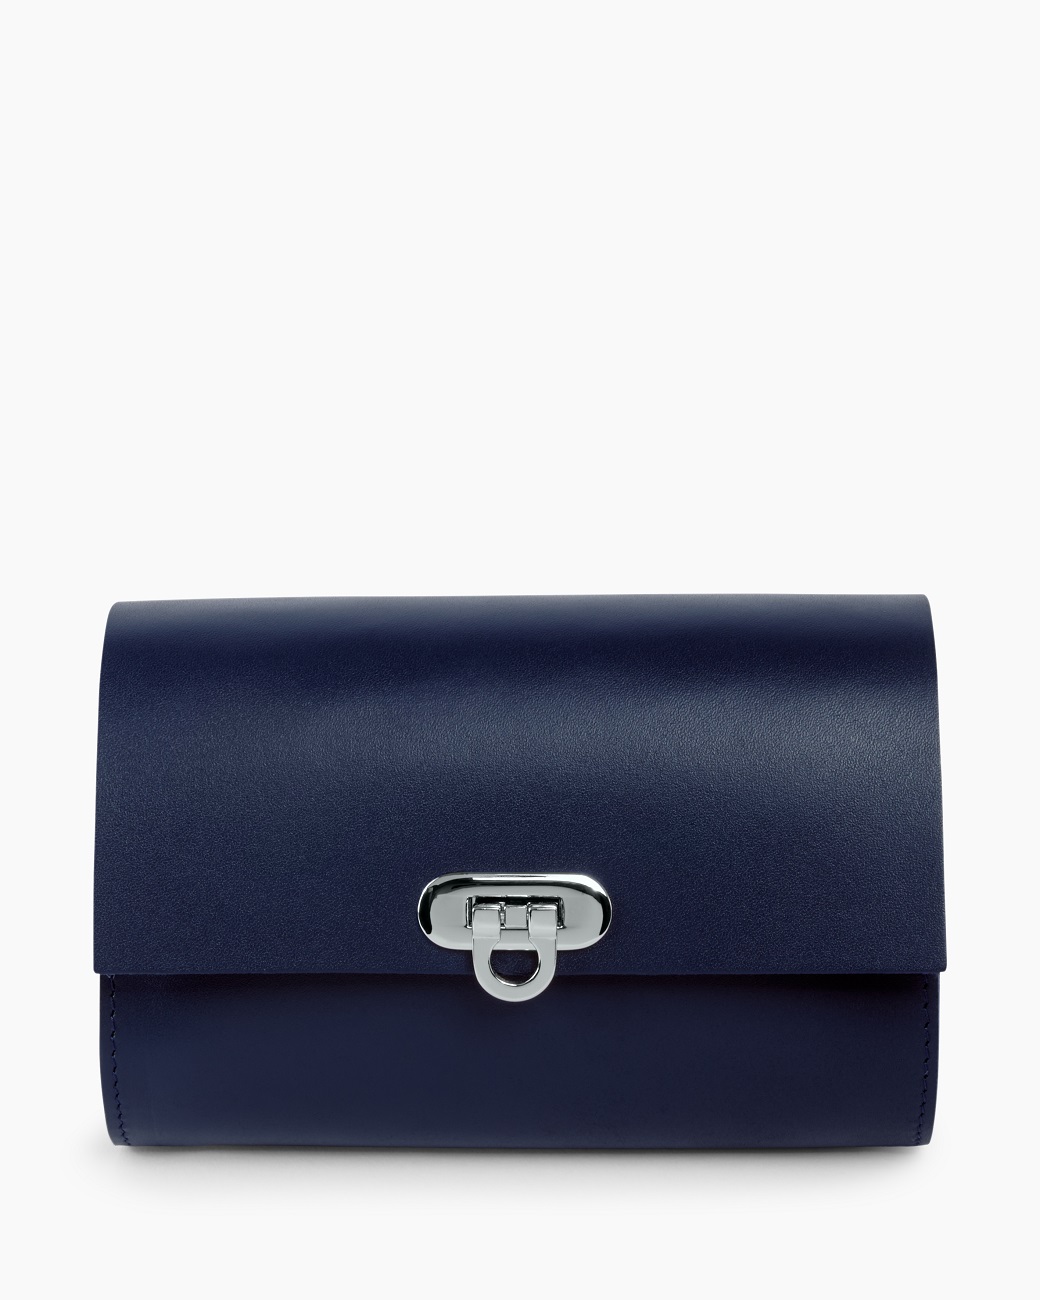 Женская кожаная поясная сумка синяя A008 sapphire mini